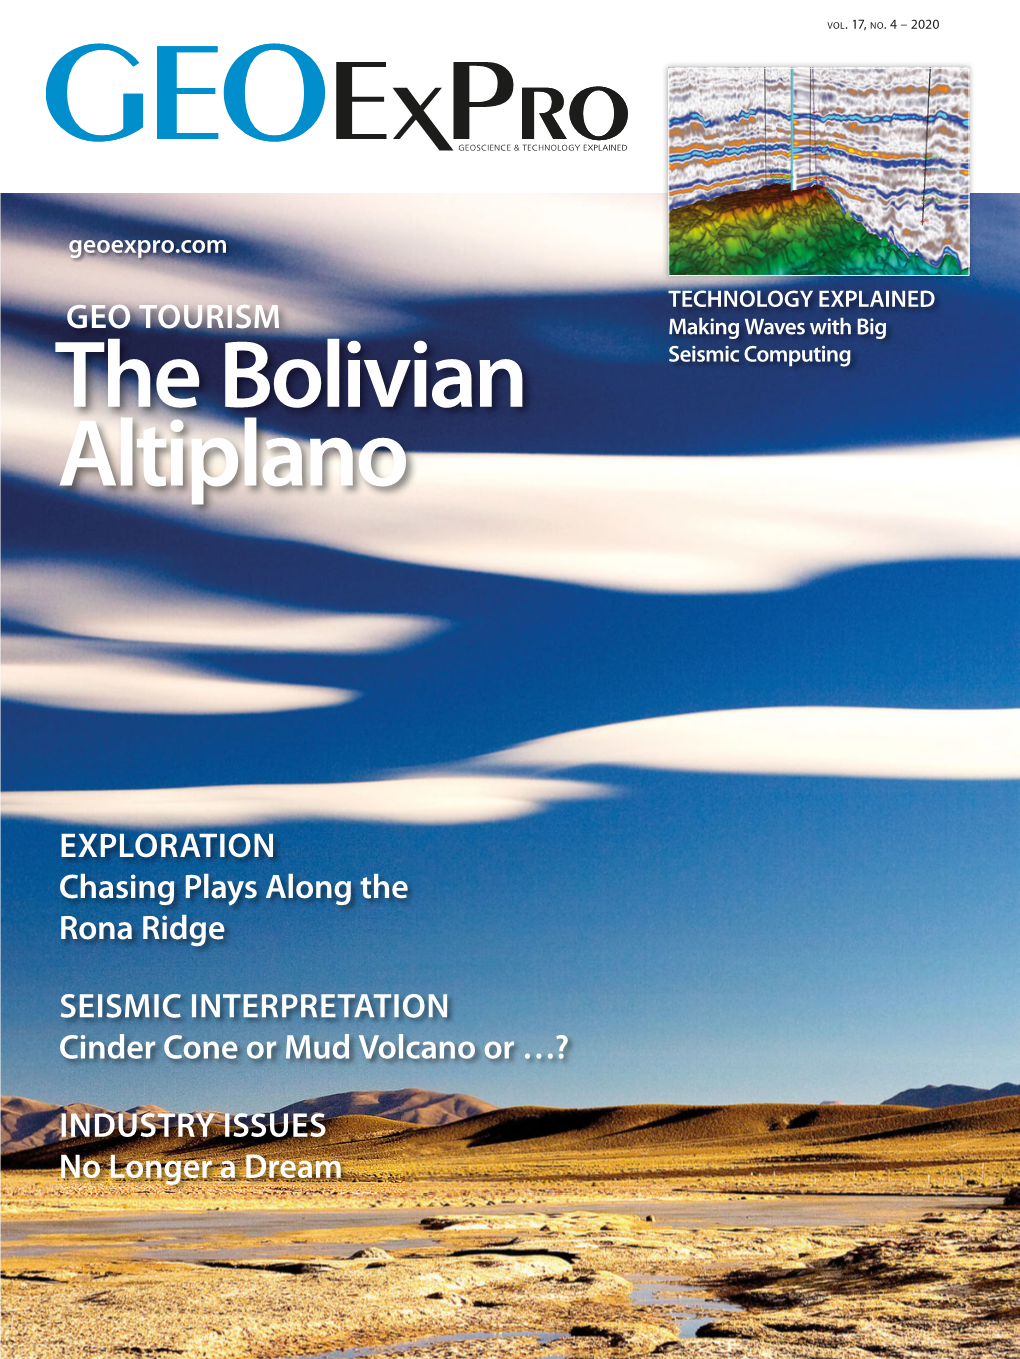 The Bolivian Altiplano